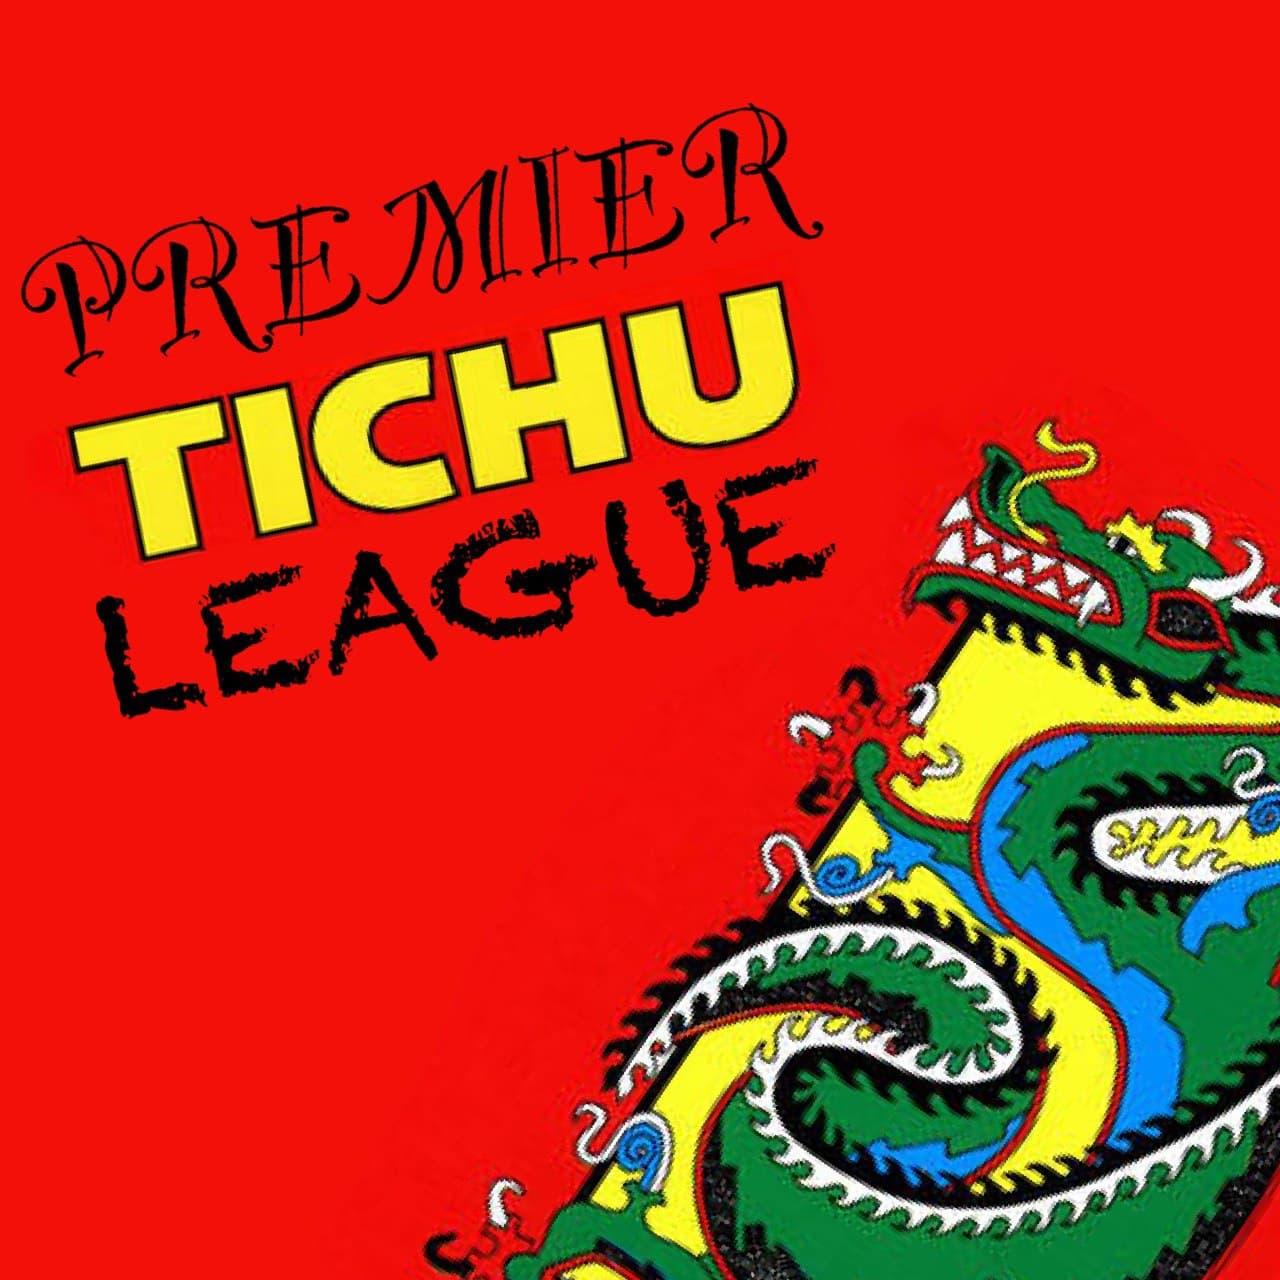 Premier Tichu League